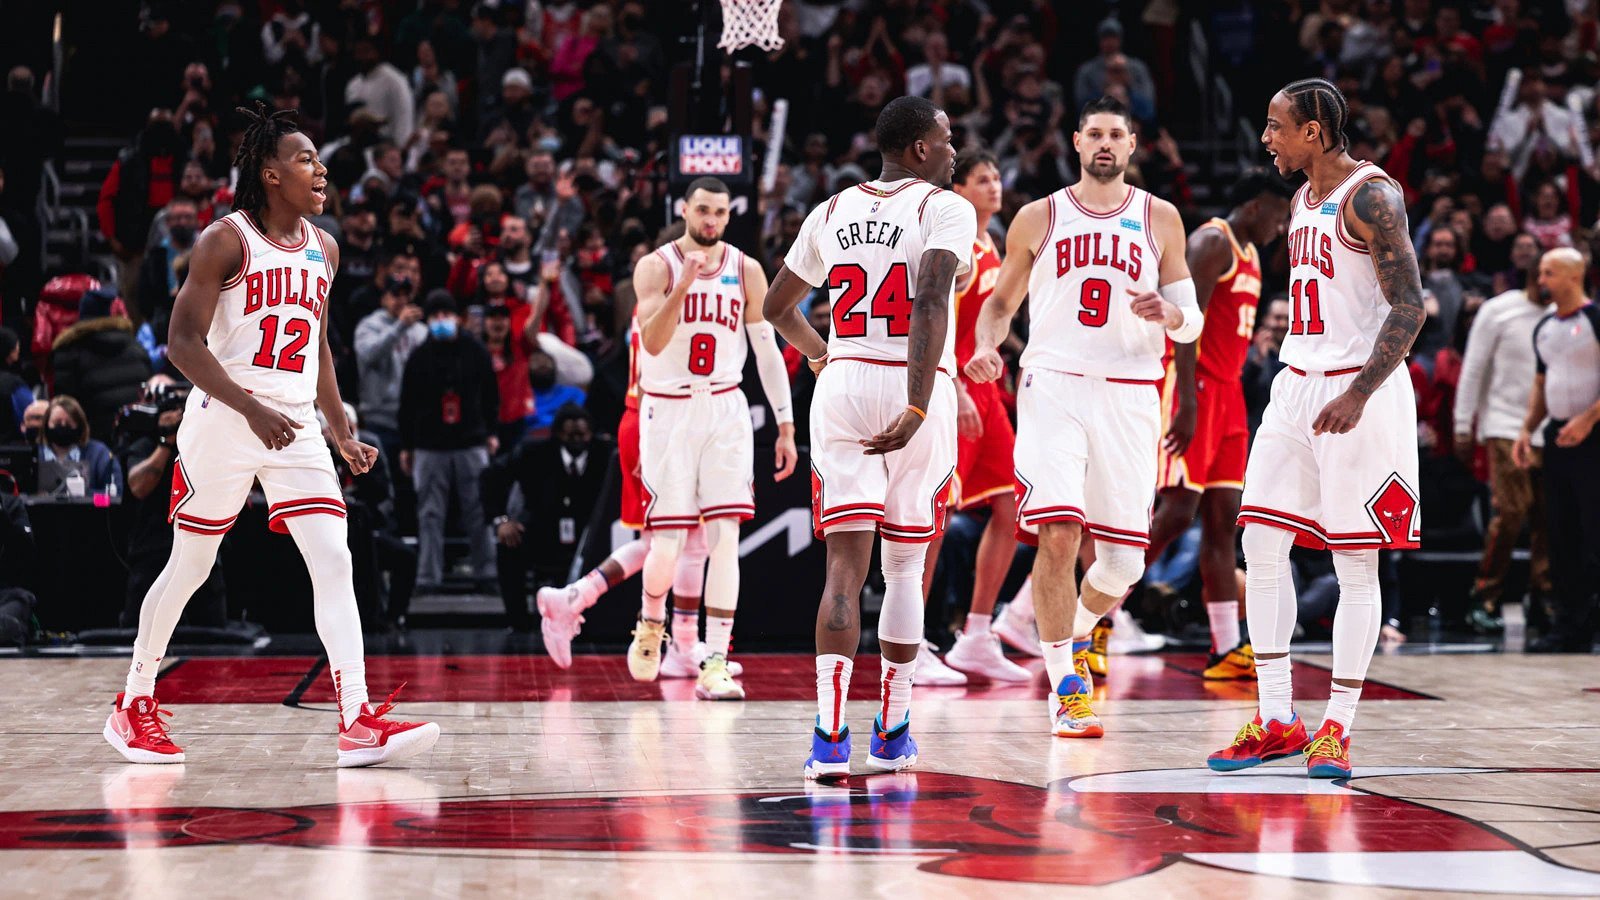 Chicago Bulls players playing basketball